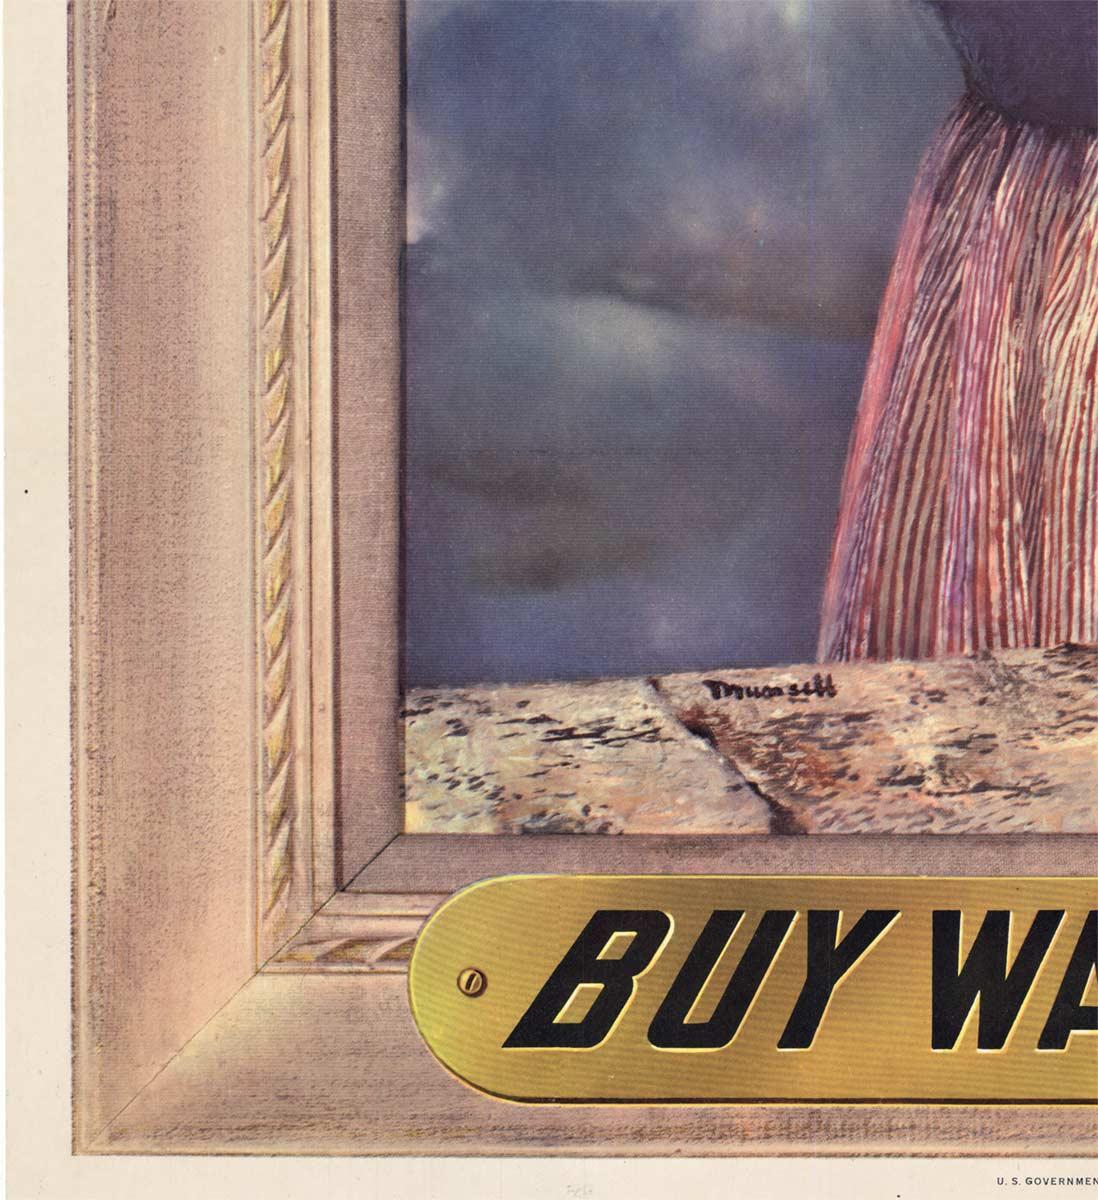 Original For their future - Buy War Bond - Achetez une affiche vintage de la Seconde Guerre mondiale - Réalisme américain Print par Munsett 